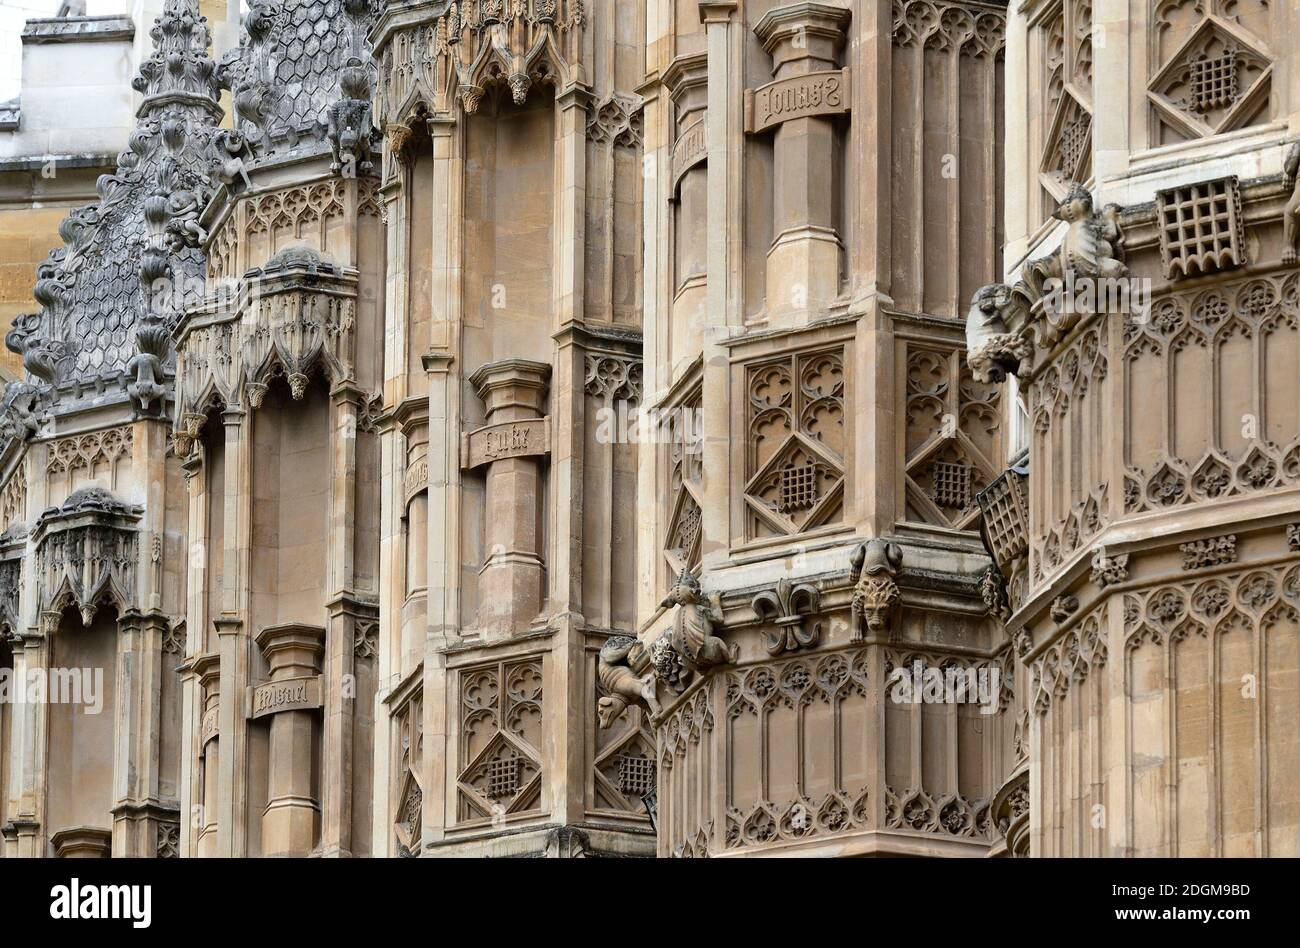 Londra, Inghilterra, Regno Unito. Abbazia di Westminster: Dettaglio dell'esterno della Cappella di Enrico VII. Plinti vuoti originariamente abitati da statue, che dal 1700.. Foto Stock